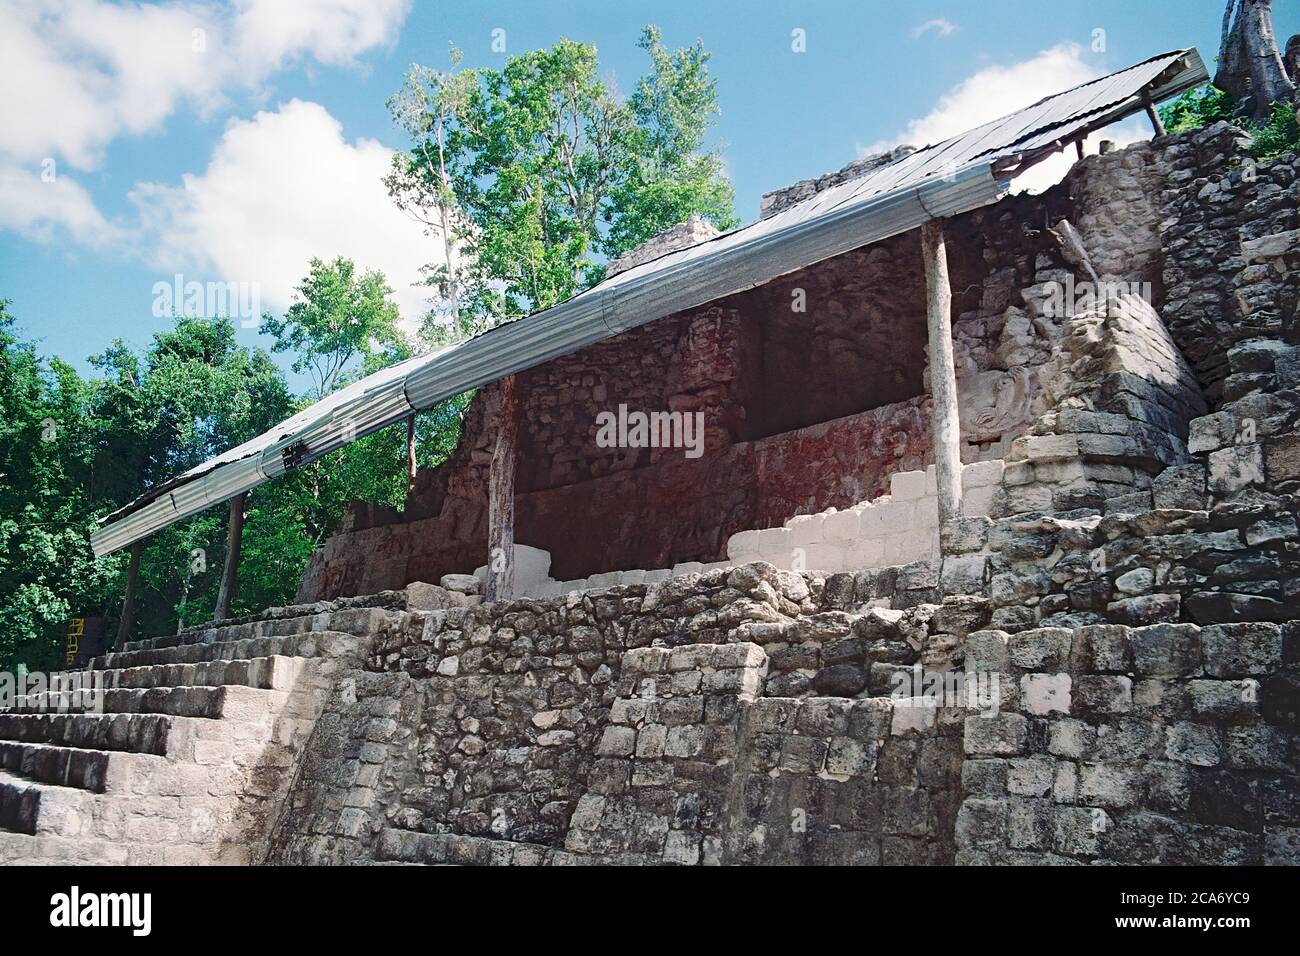 Struktur I. die temporäre Metalldach errichtet, um den Fries zu schützen. Balamku Maya Ruinen. Campeche, Mexiko. Vintage Film Bild - ca. 1990. Stockfoto